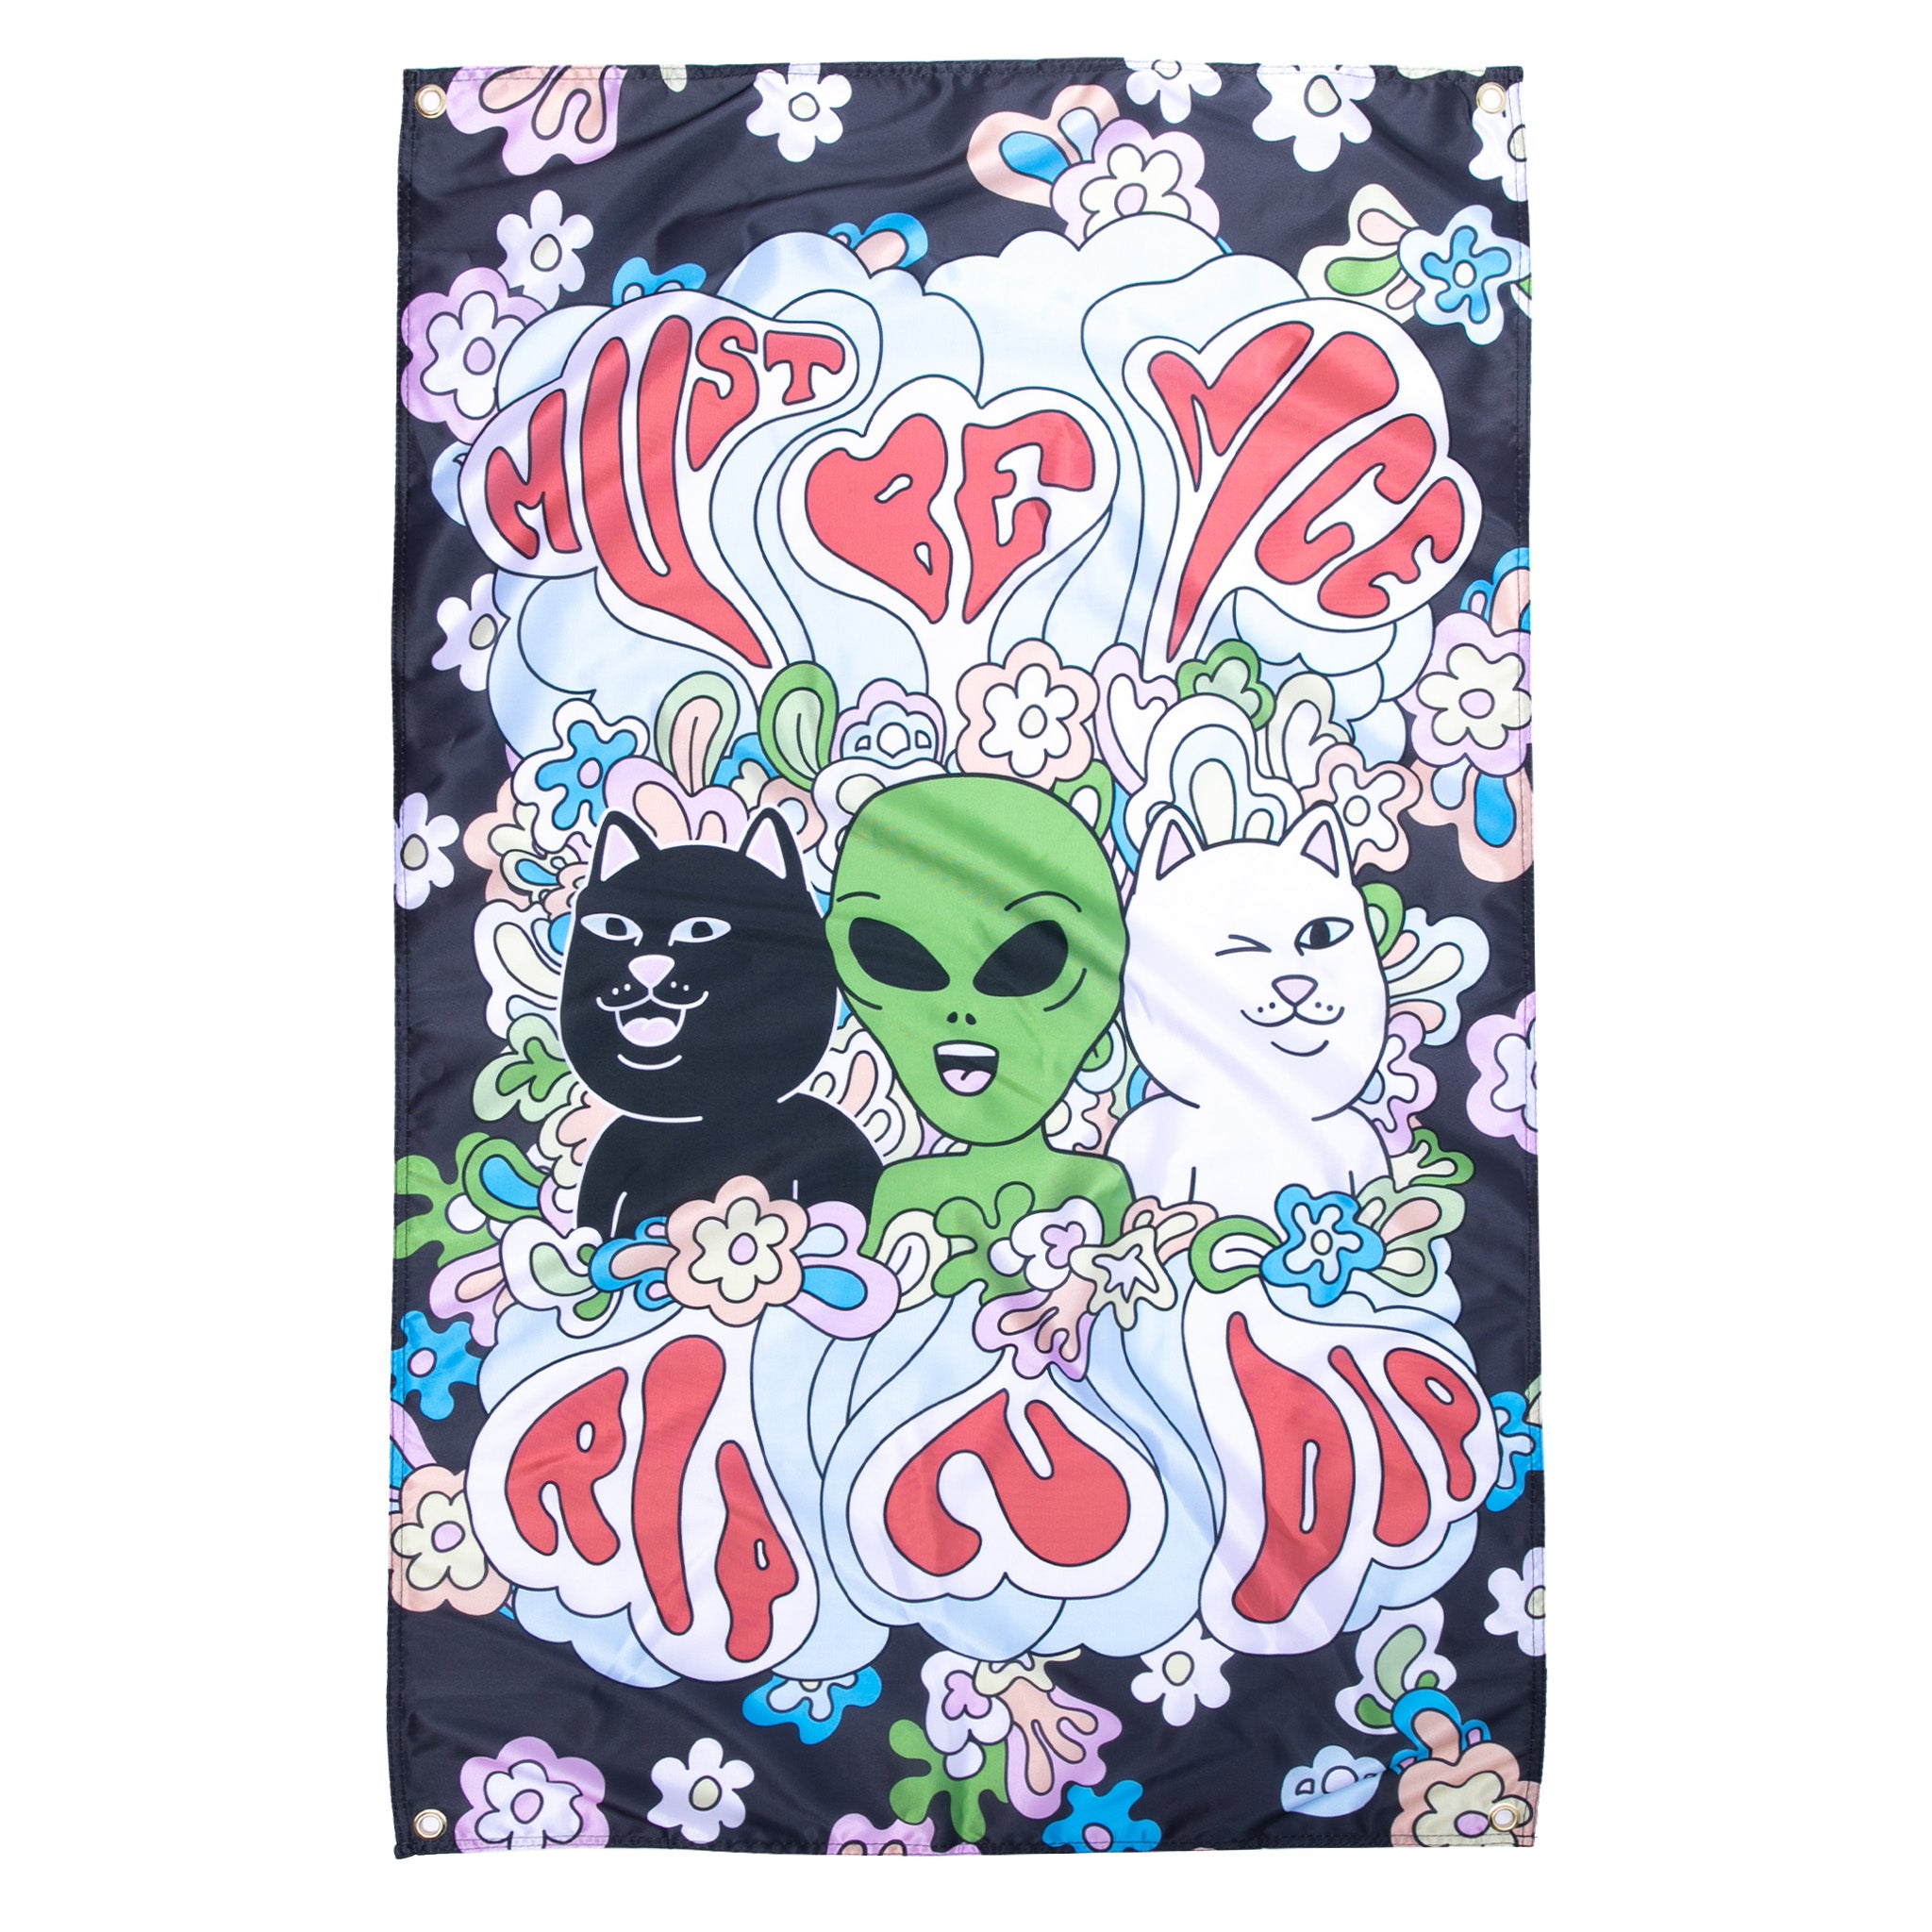 Wallpaper alien Tumblr  Hippie wallpaper, Trippy alien, Trippy wallpaper